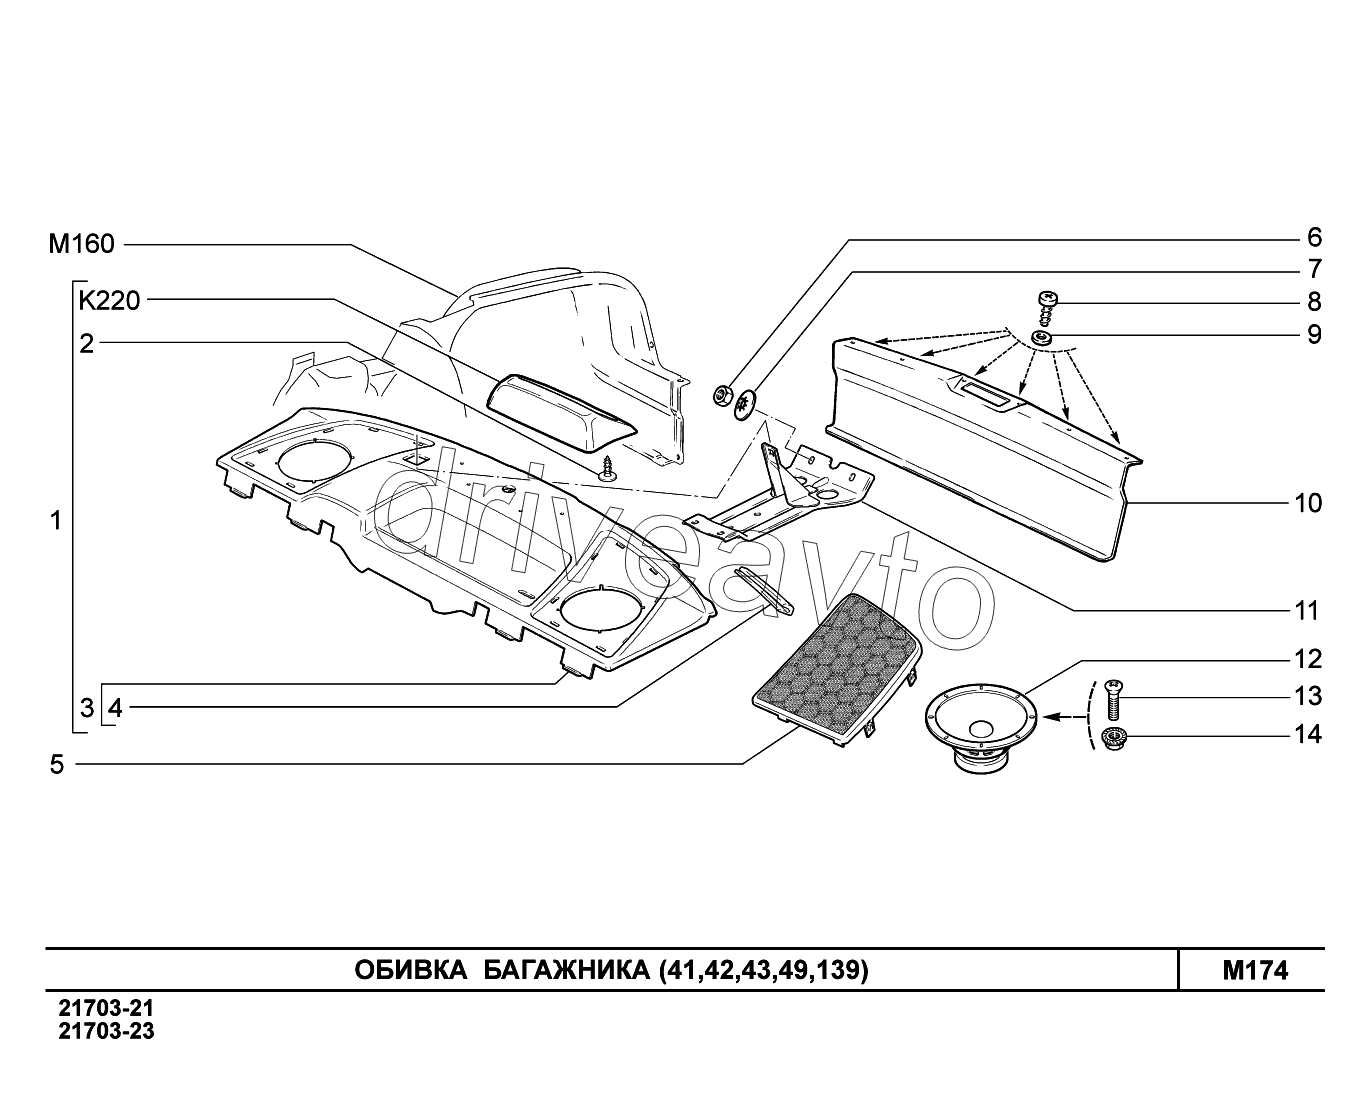 M174. Обивка багажника